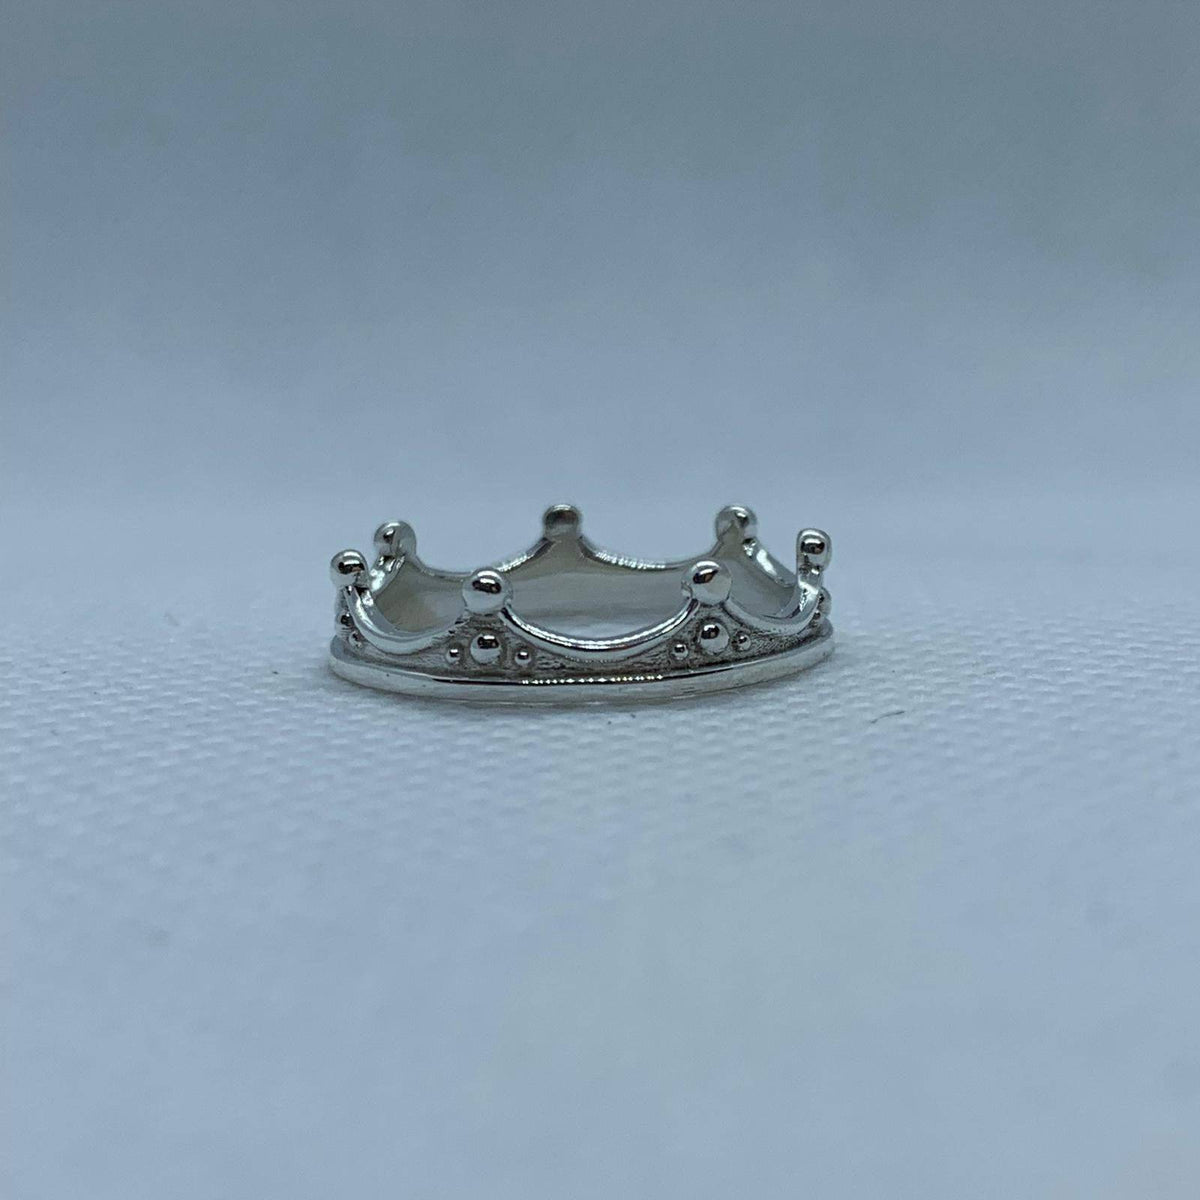 King Louis Crown Ring, Loni Design Group Rings $1,188.94